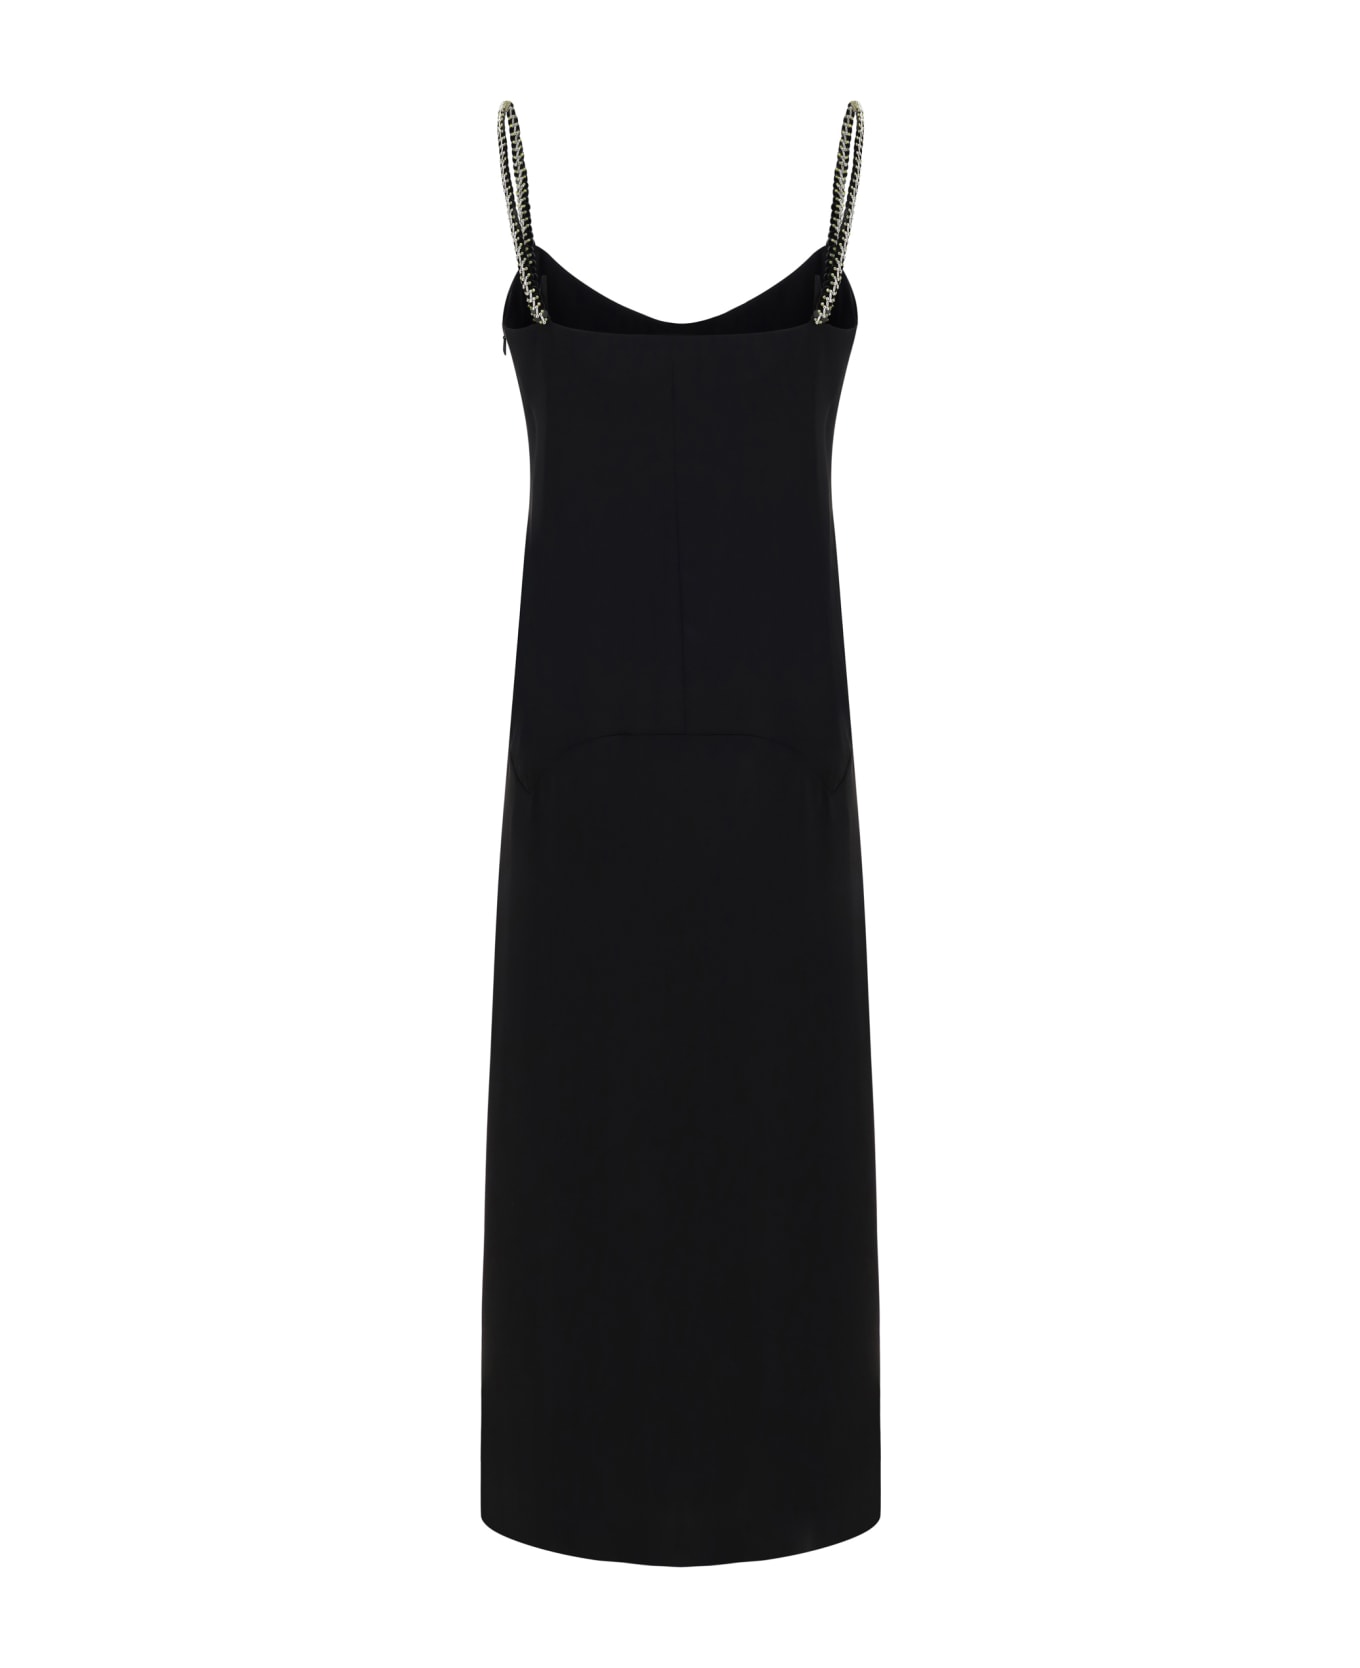 Lanvin Summer Dress - Black